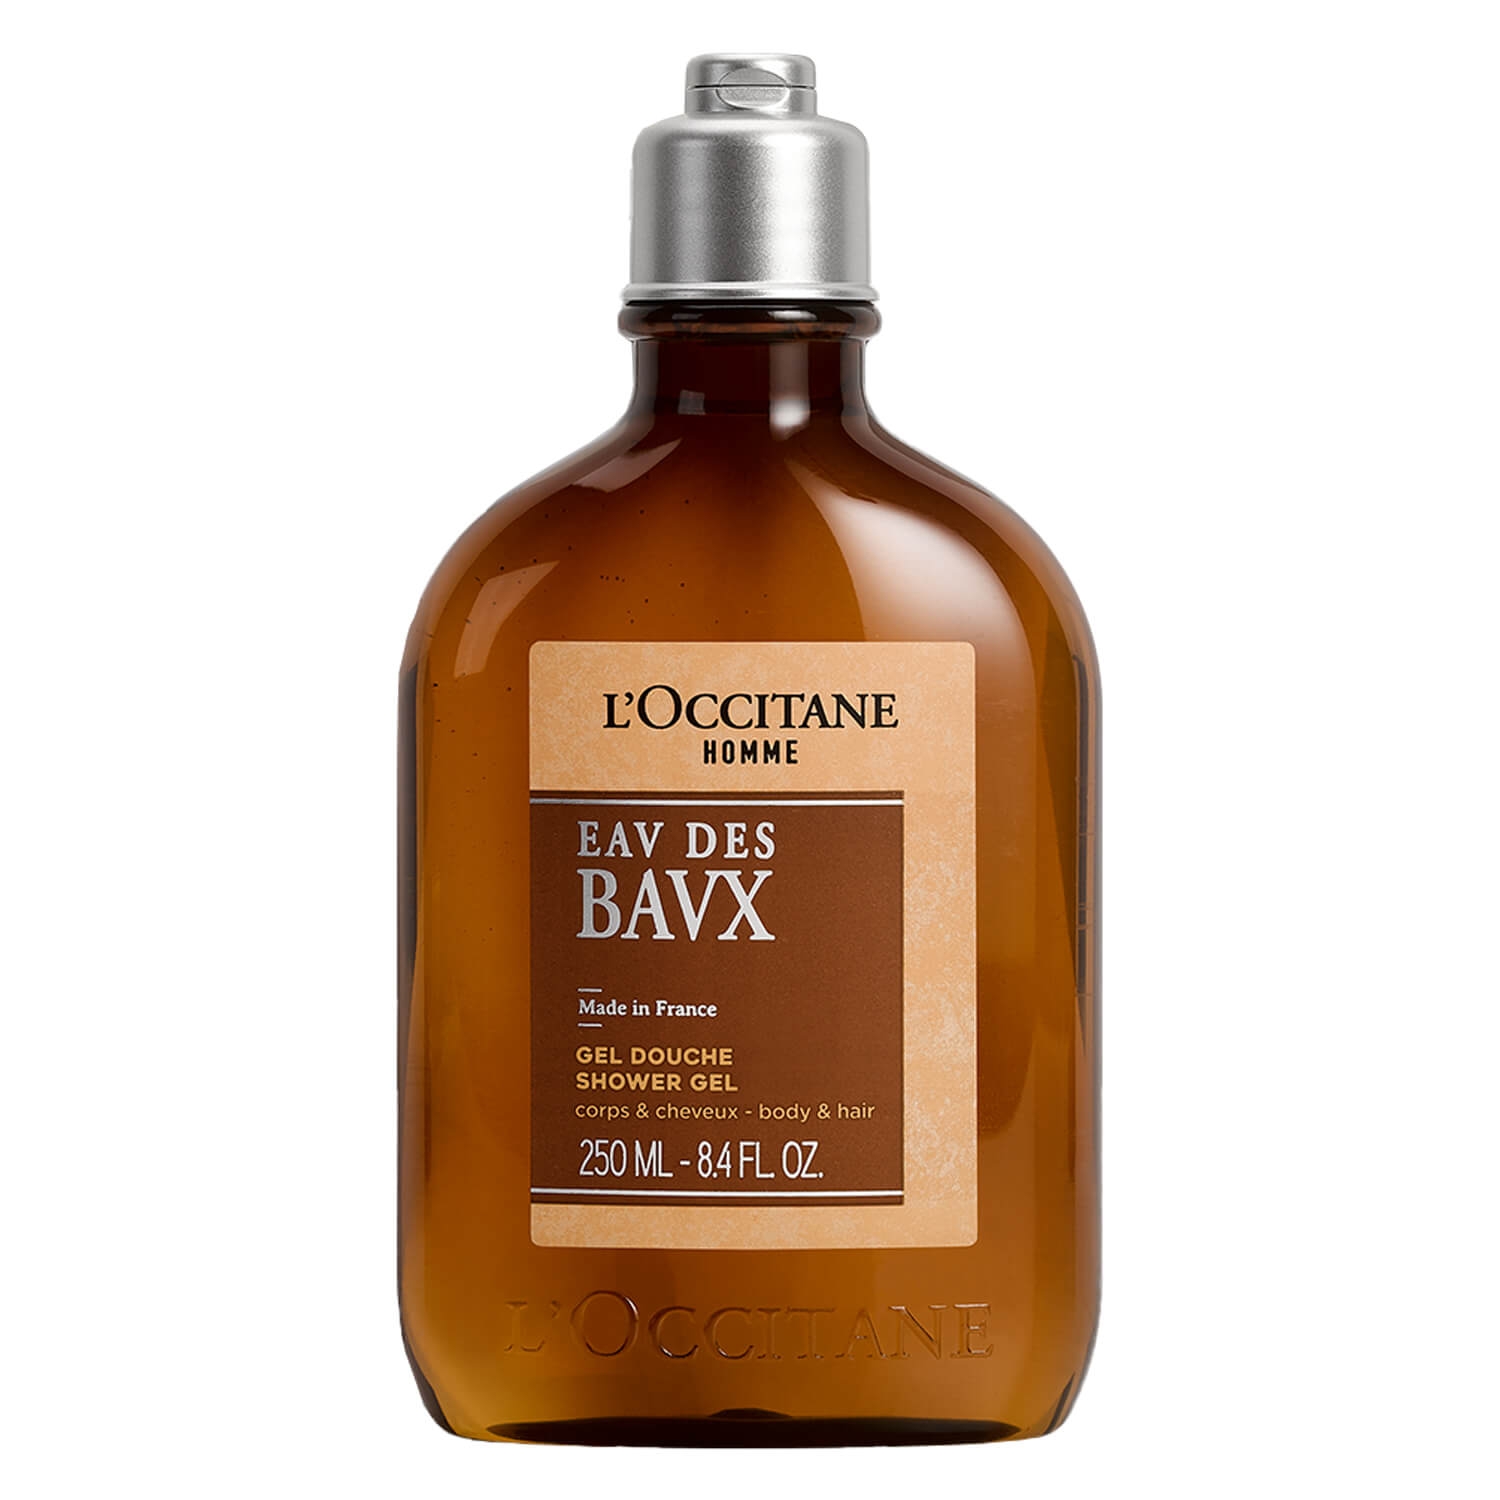 Produktbild von L'Occitane Body - Baux Shower Gel